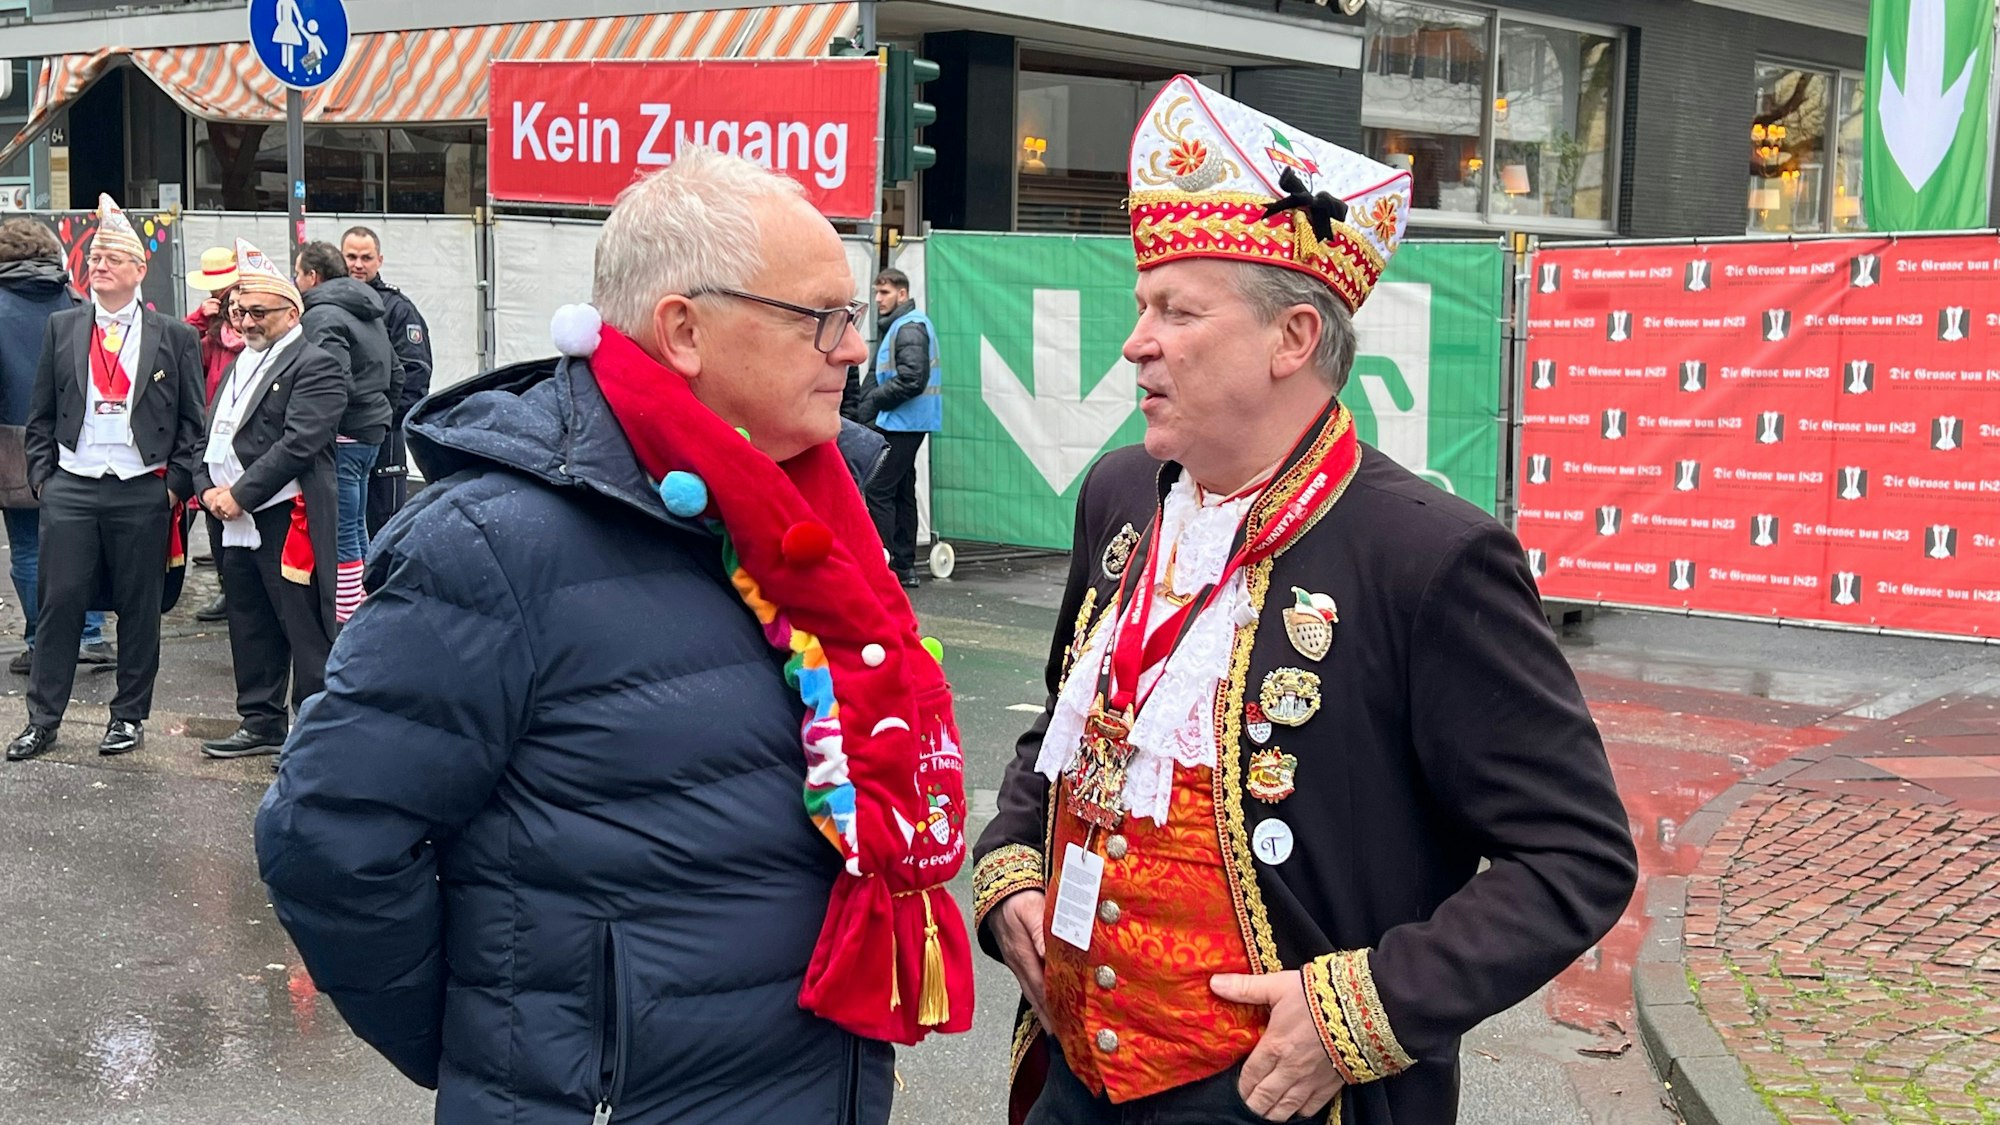 Polizeipräsident Johannes Hermanns (links) und Christoph Kuckelkorn beim Straßenfest